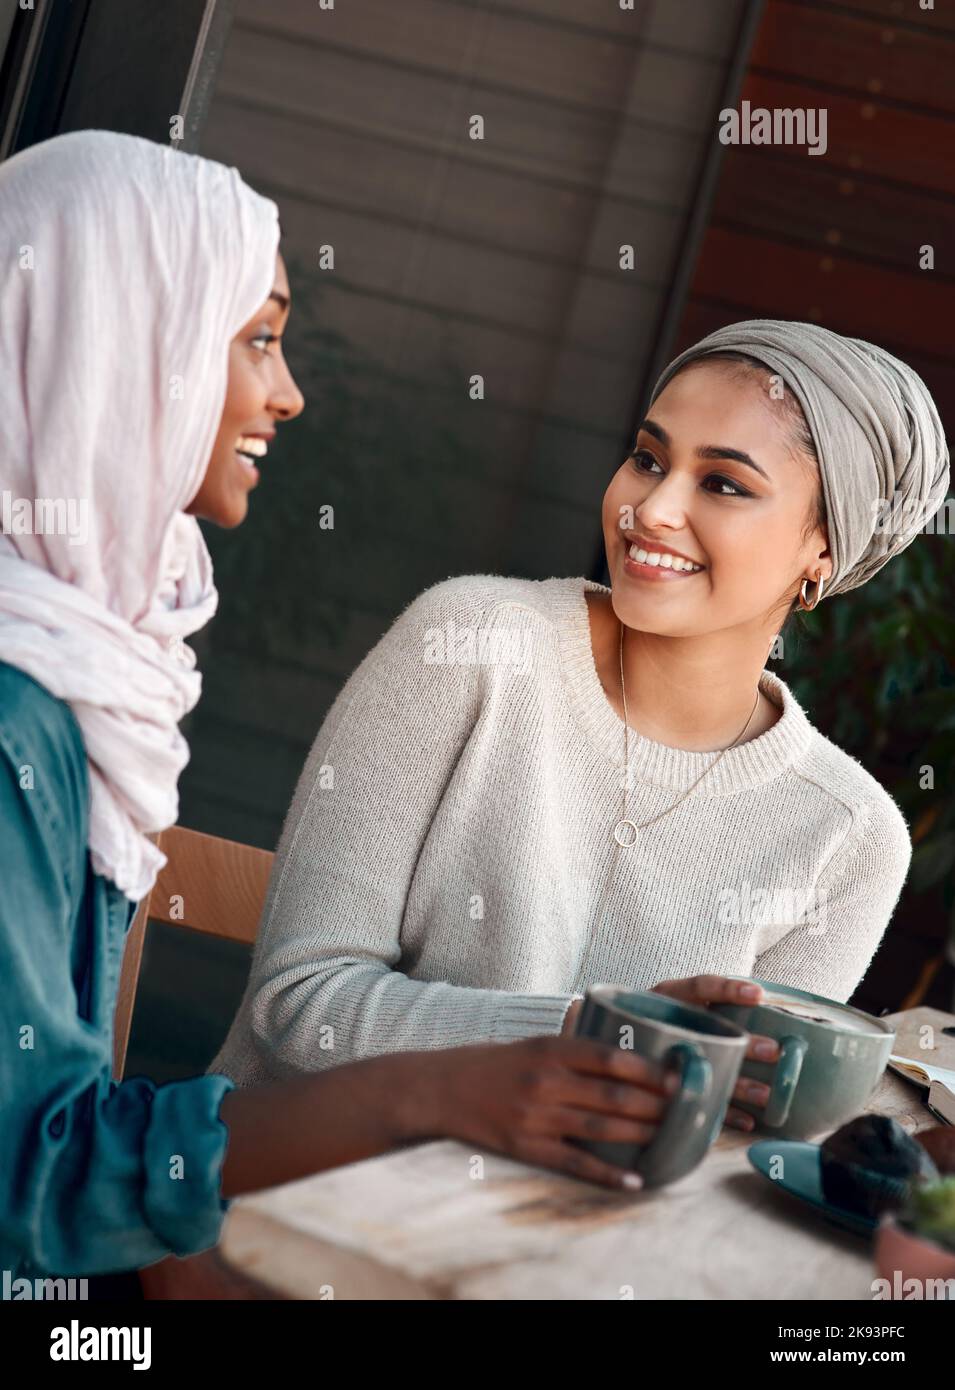 Parla di una buona data del caffè. Due giovani fidanzate chiacchierano in un bar mentre si vestono in hijab. Foto Stock